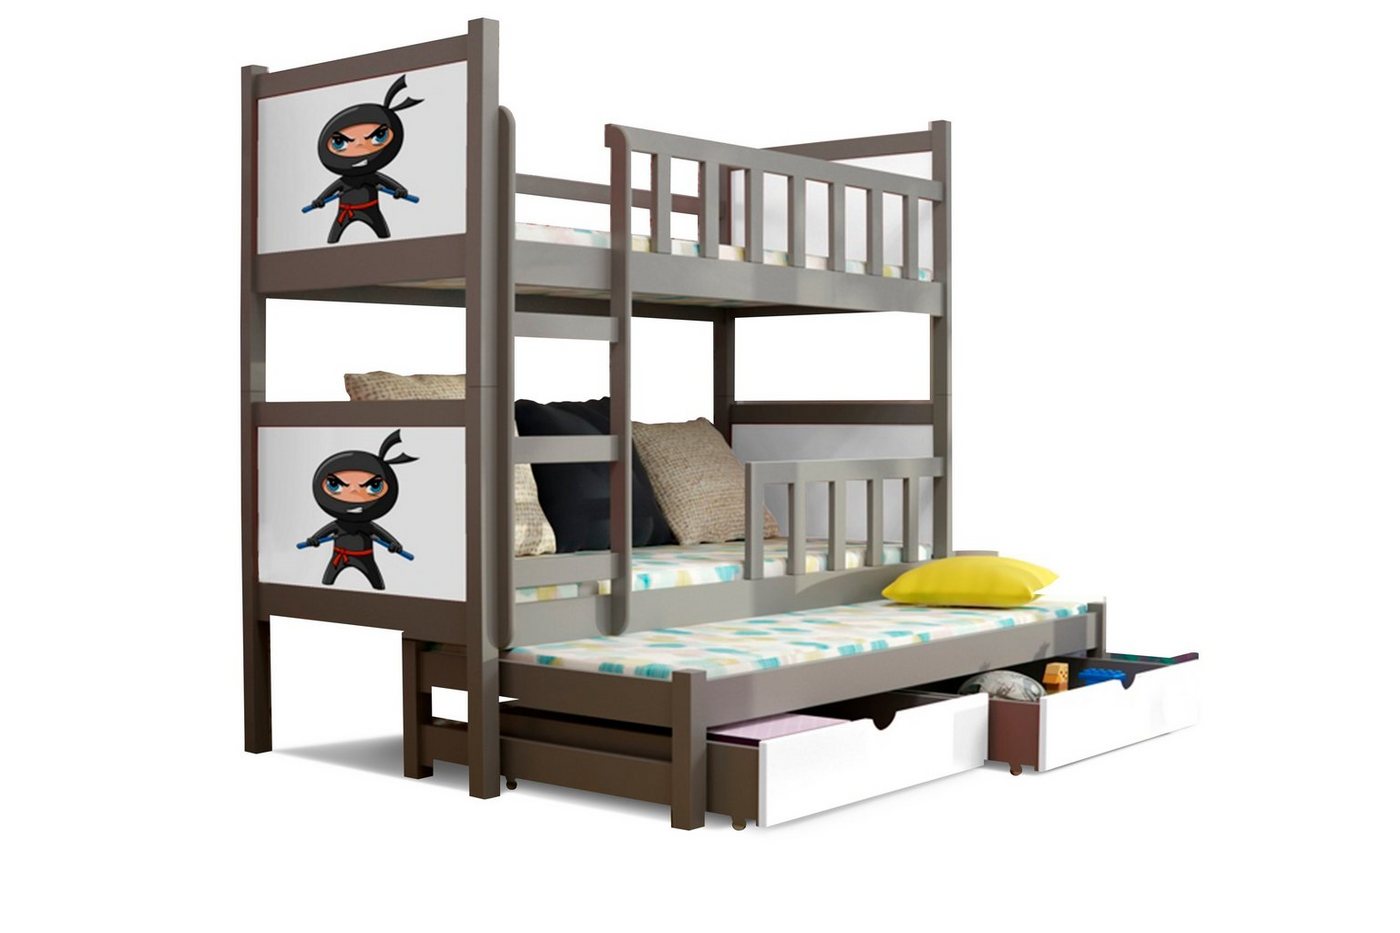 99rooms Kinderbett Zoo II (Kinderbett, Bett), 190x80 cm, mit Bettkasten, Kieferholz, mit Leiter und Rausfallschutz, Modern Design, für Kinder von 99rooms